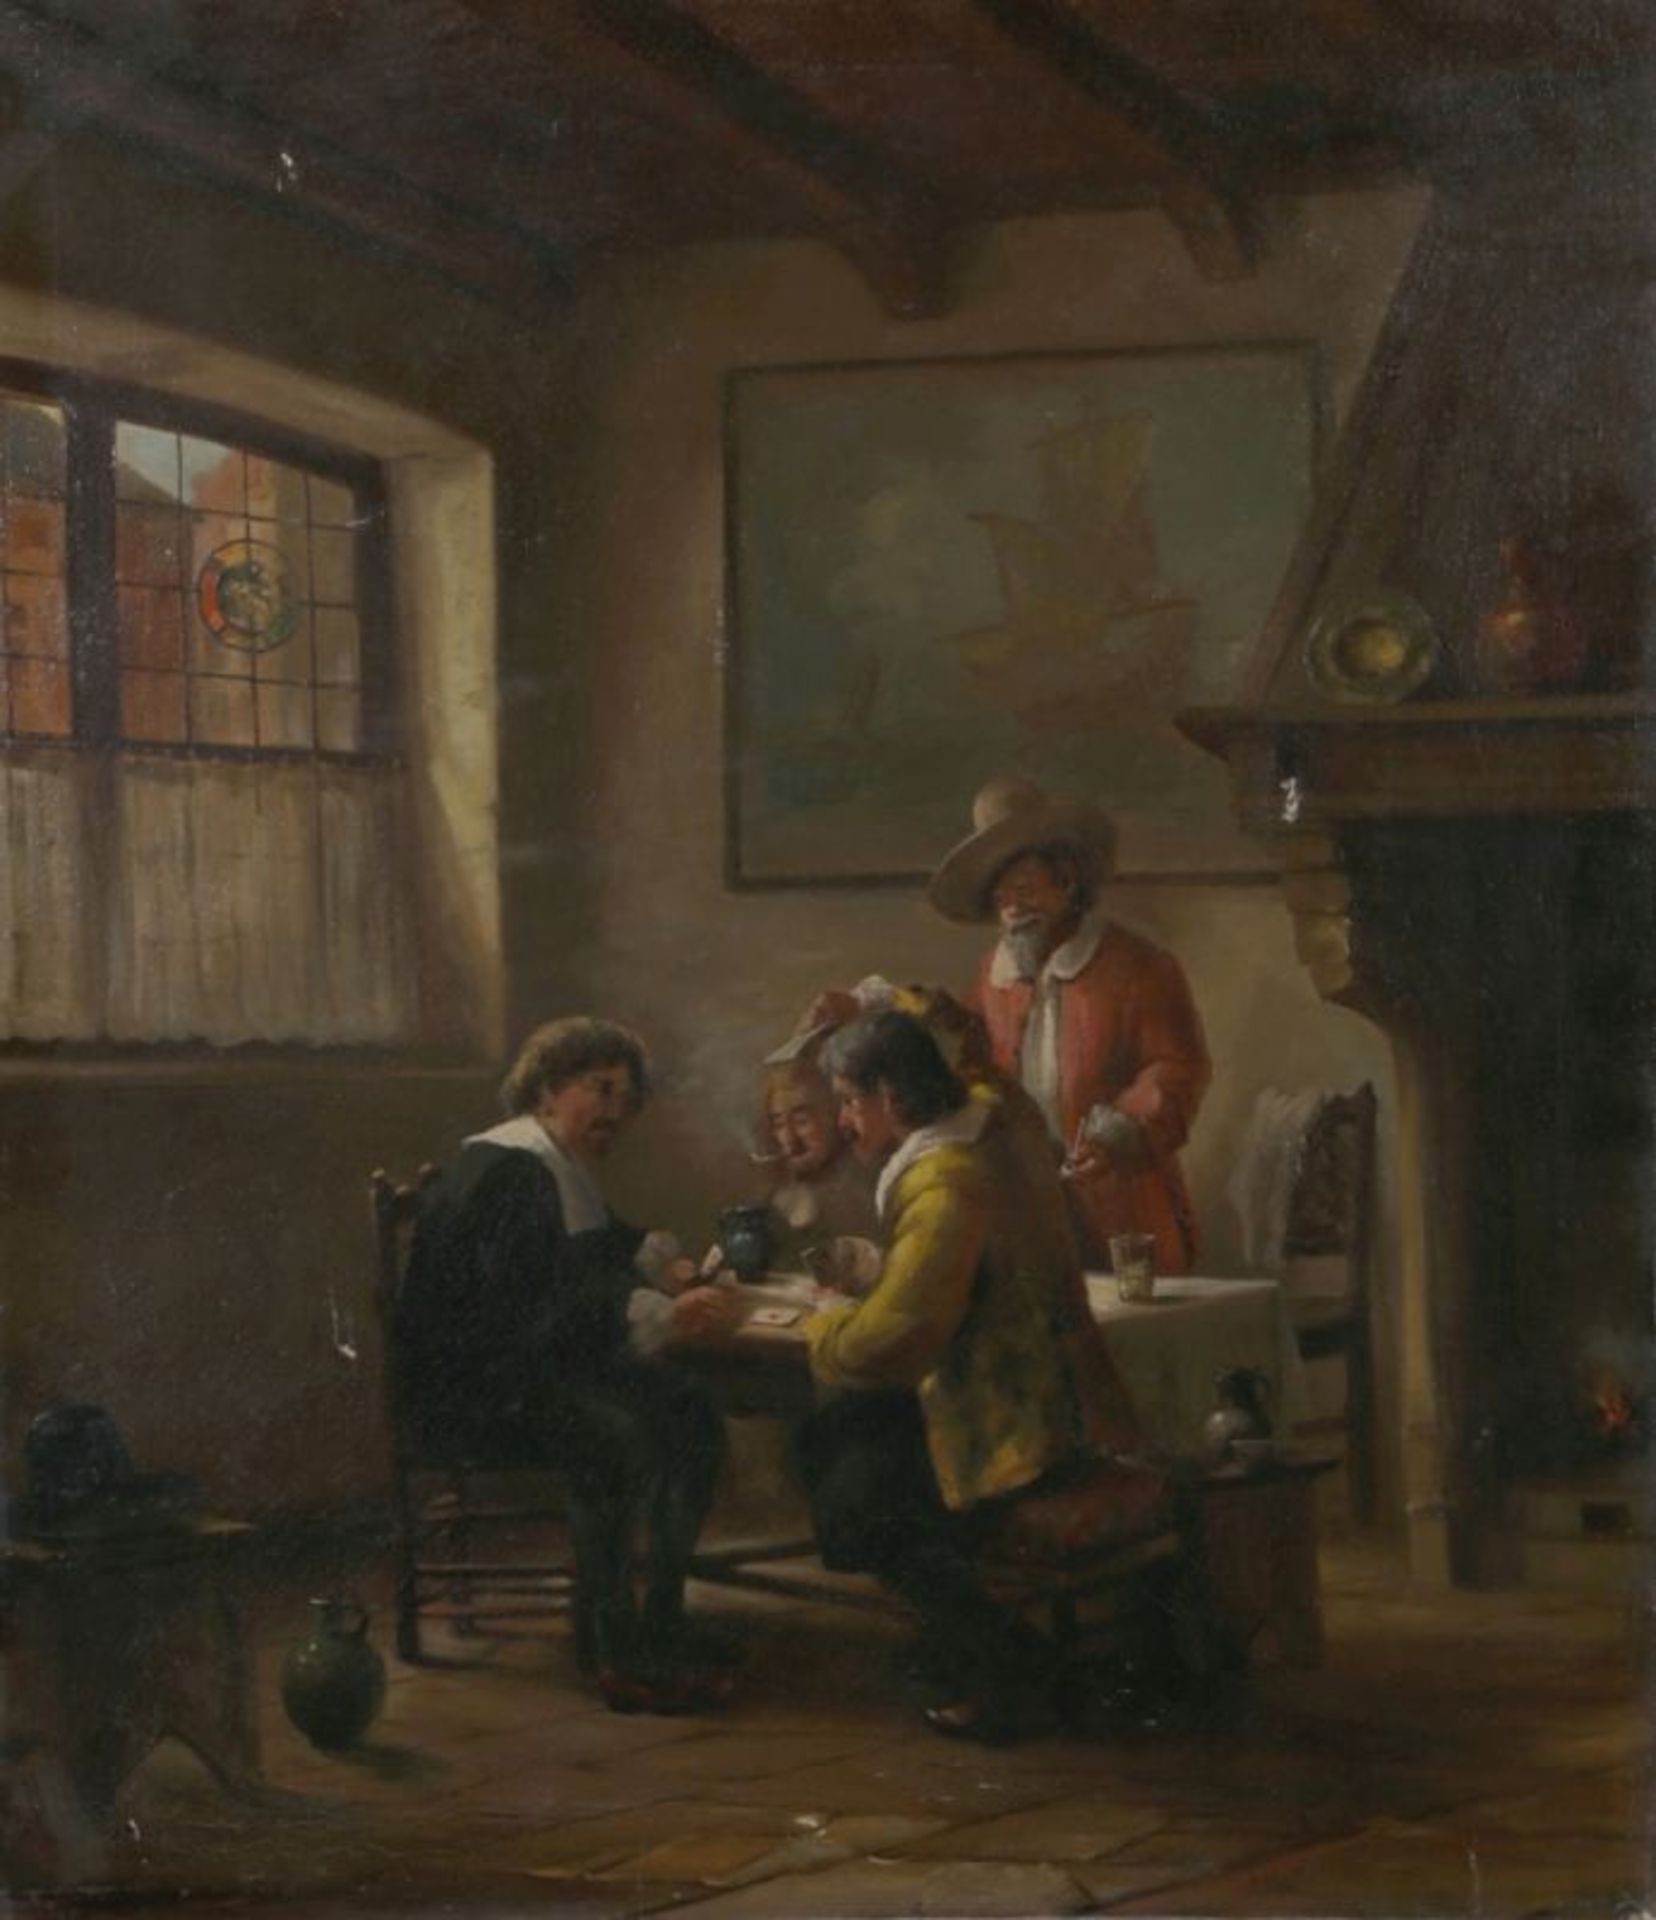 Anonymer Maler, 1. Hälfte 20. Jh. "Beim kartenspiel in der Stube", Öl/Lw., 83 x 70 cm,besch.<br